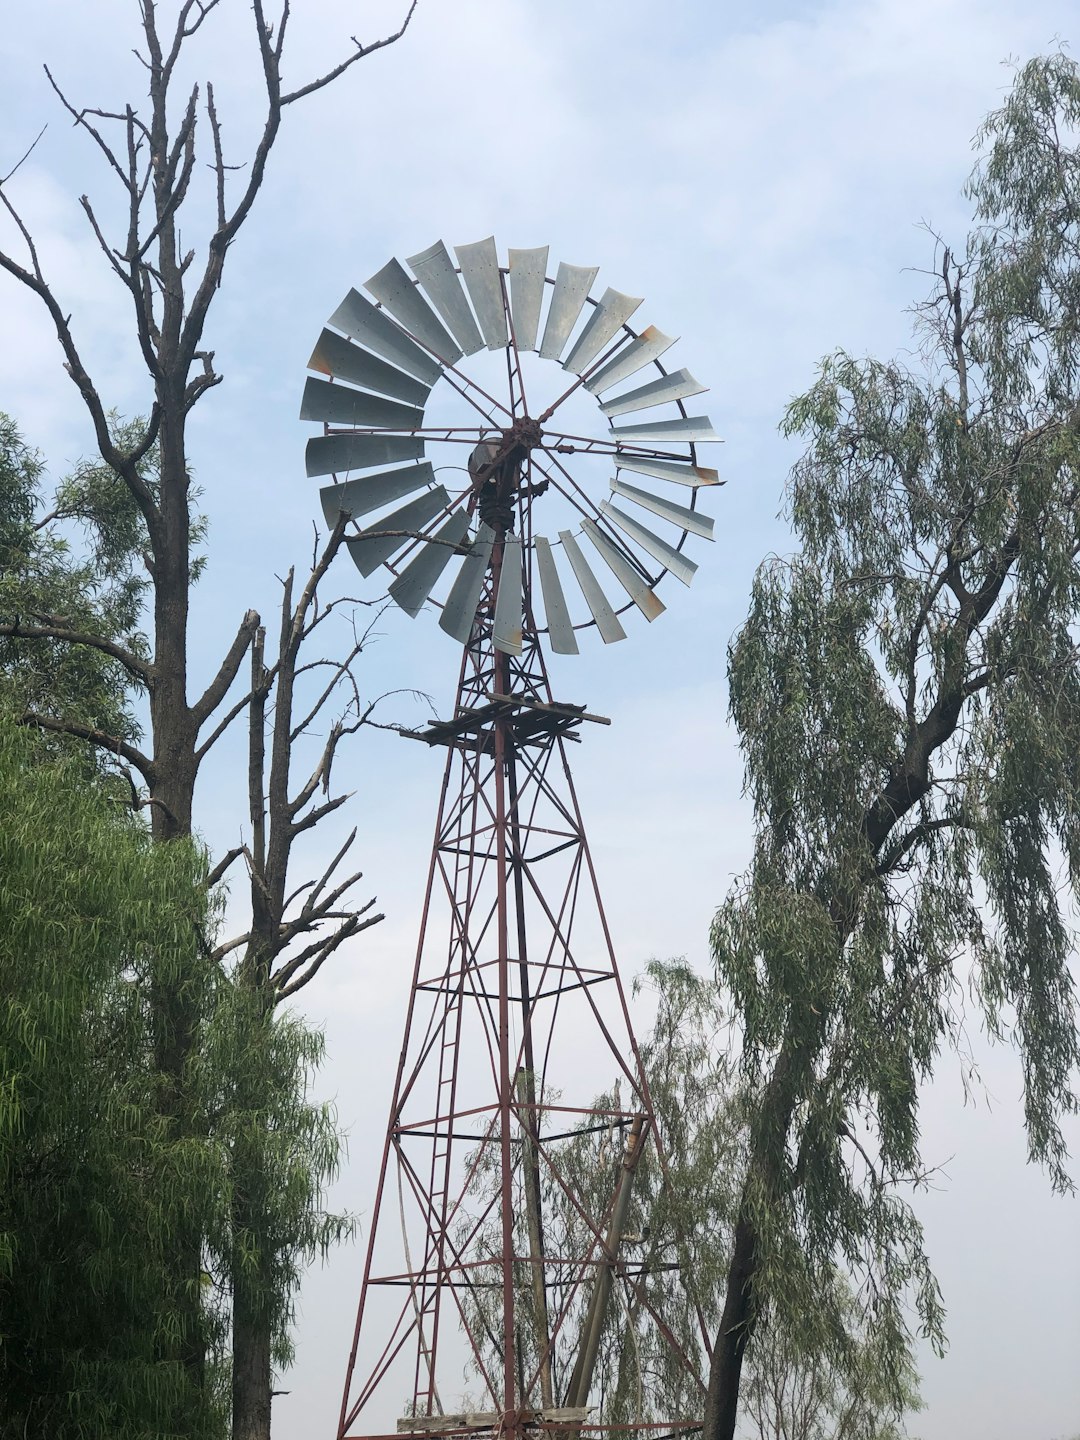 Ferris wheel photo spot Moree NSW 2400 NSW